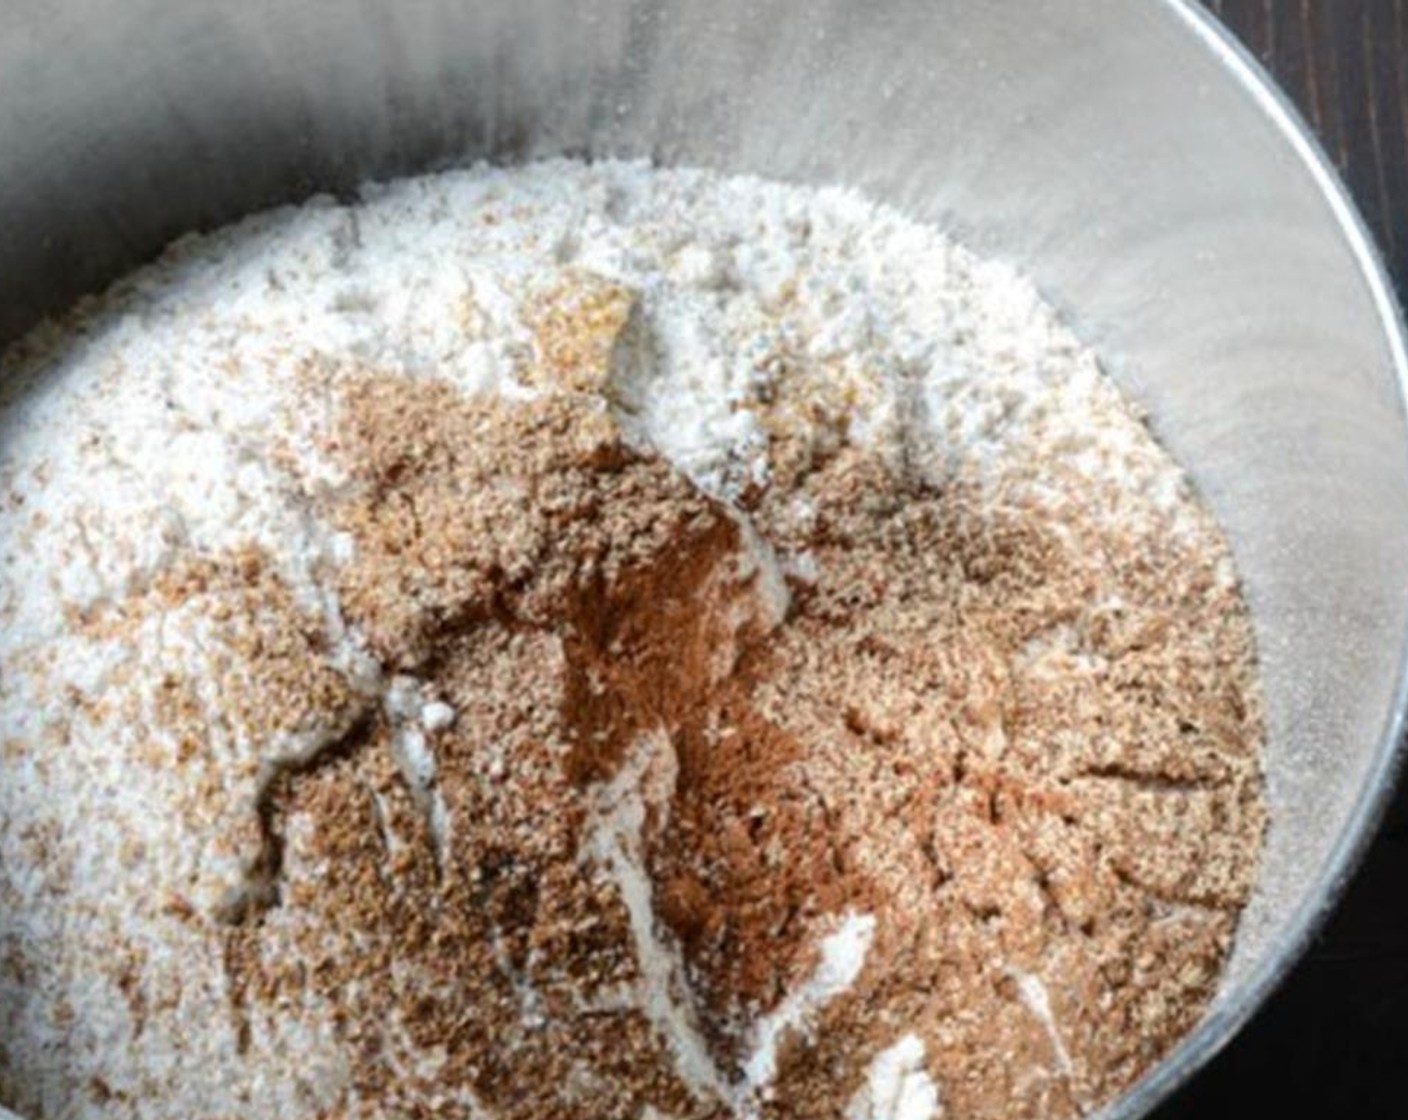 step 6 In a bowl sift All-Purpose Flour (1 cup), Whole Wheat Flour (3/4 cup), Baking Powder (1/2 tsp), Baking Soda (1 tsp), Salt (1/2 tsp), Ground Cinnamon (1/2 tsp), Ground Cloves (1/4 tsp), Ground Mace (1/4 tsp), Ground Nutmeg (1/2 tsp) and Ground Allspice (1/2 tsp).